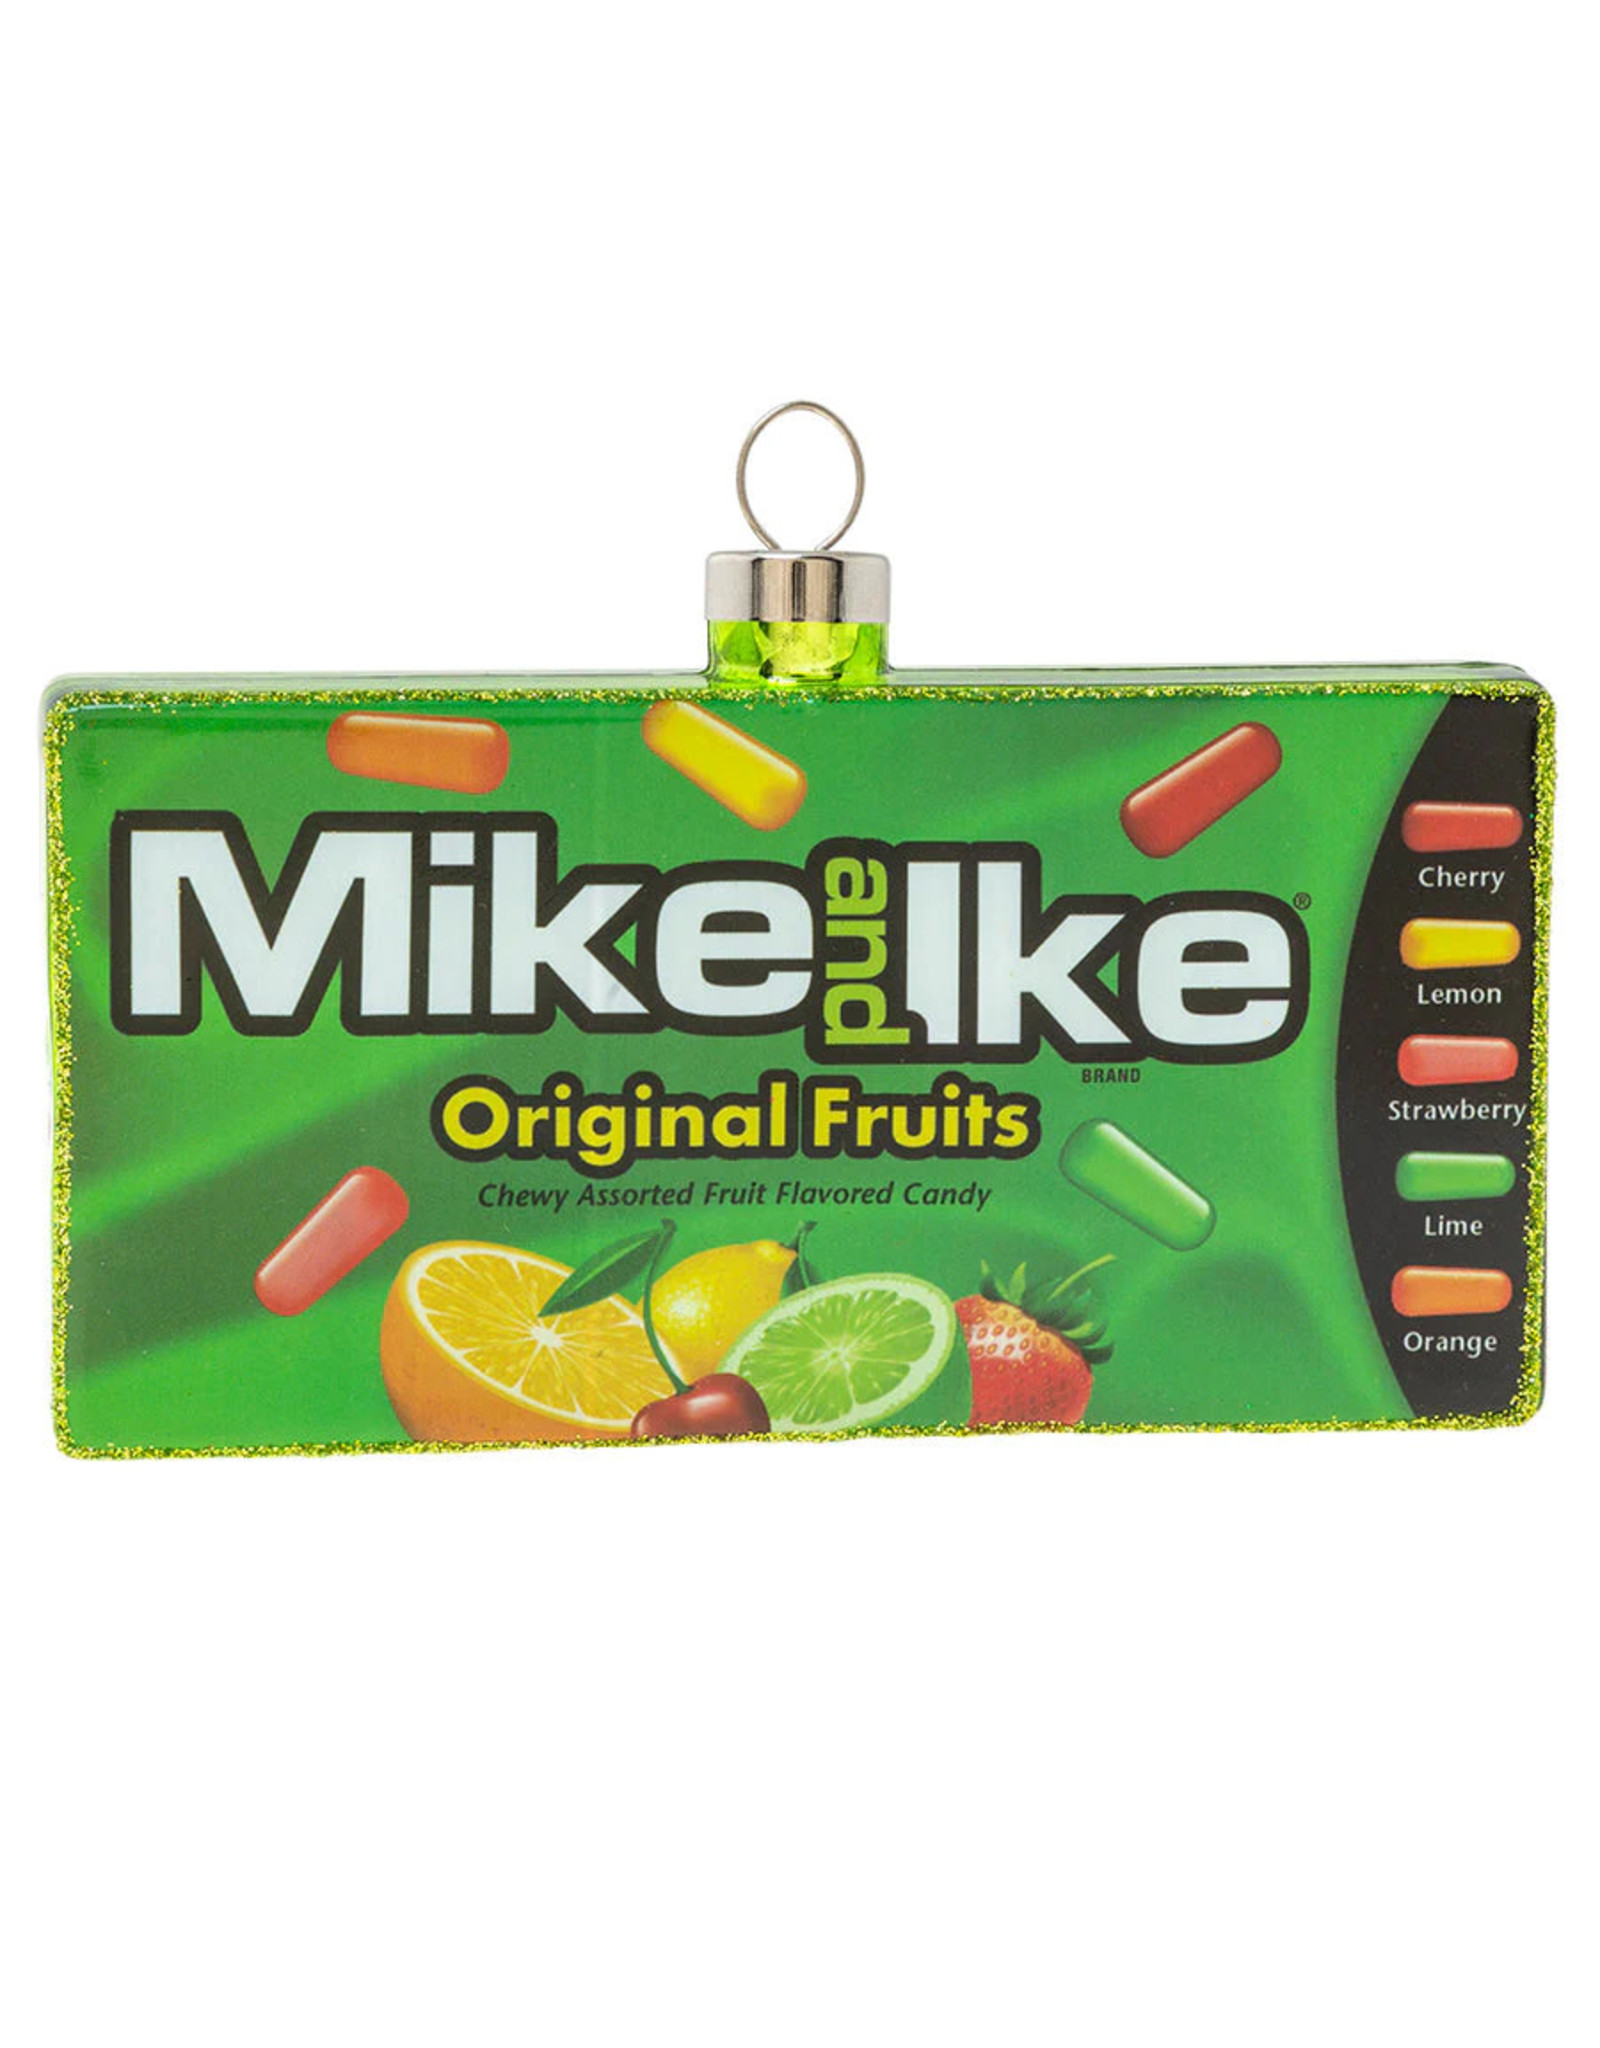 K+A Mike & Ike Box Ornament